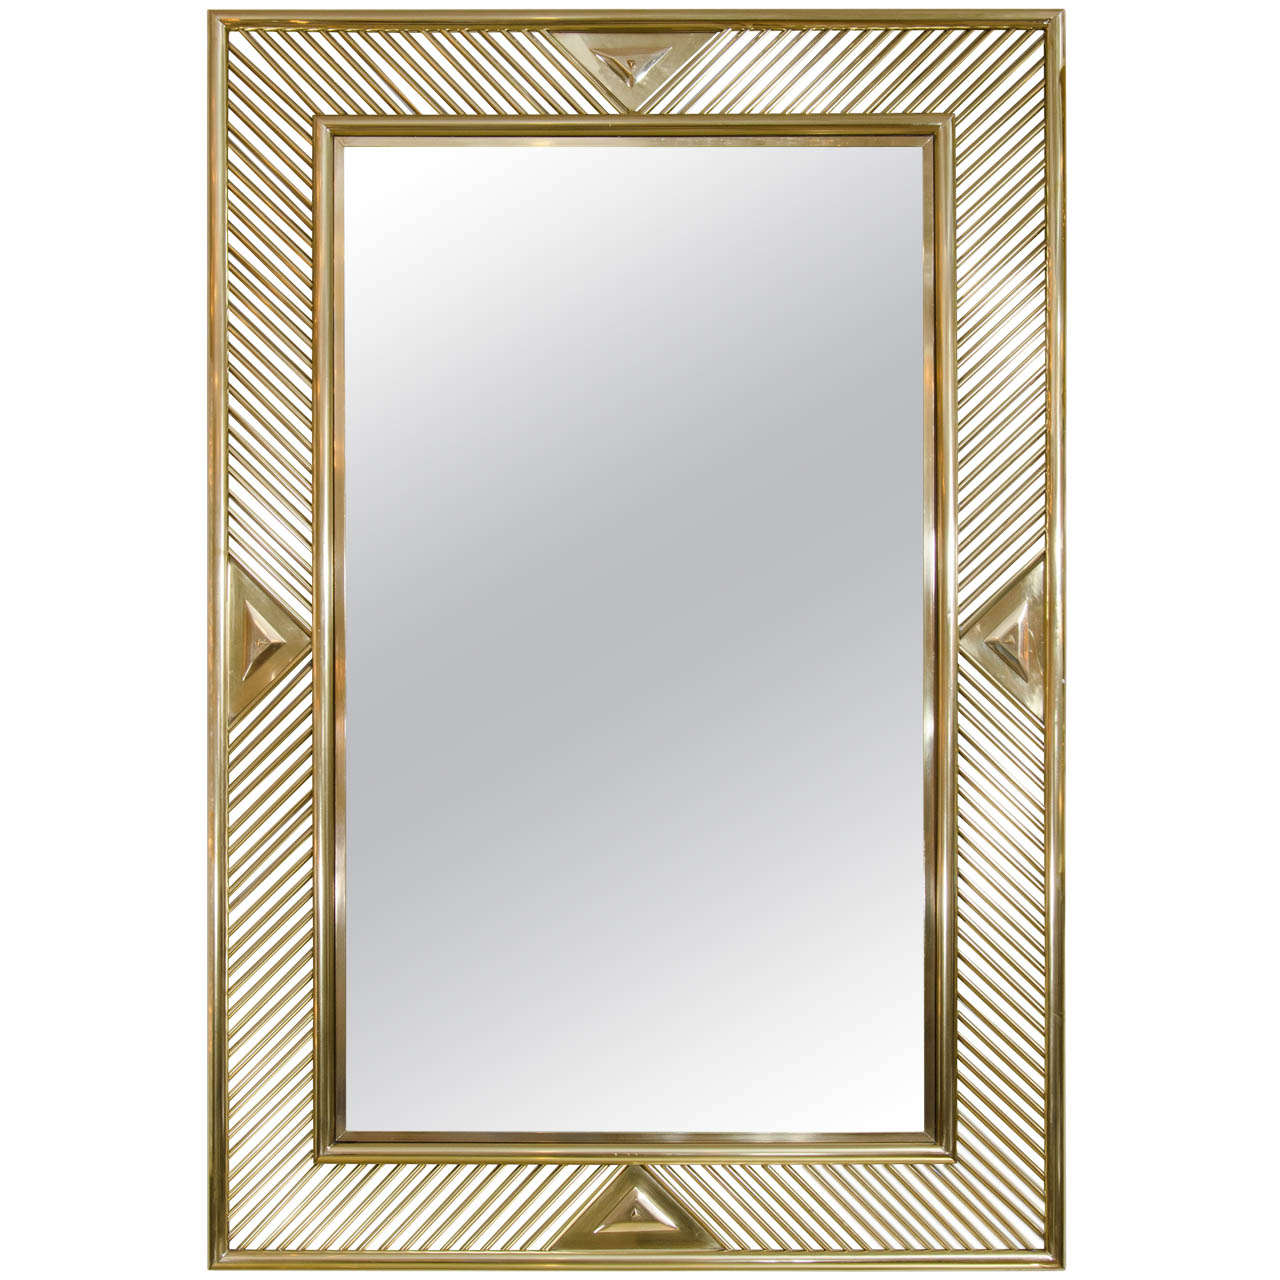 Brass Mirror With Geometric Openwork Surround